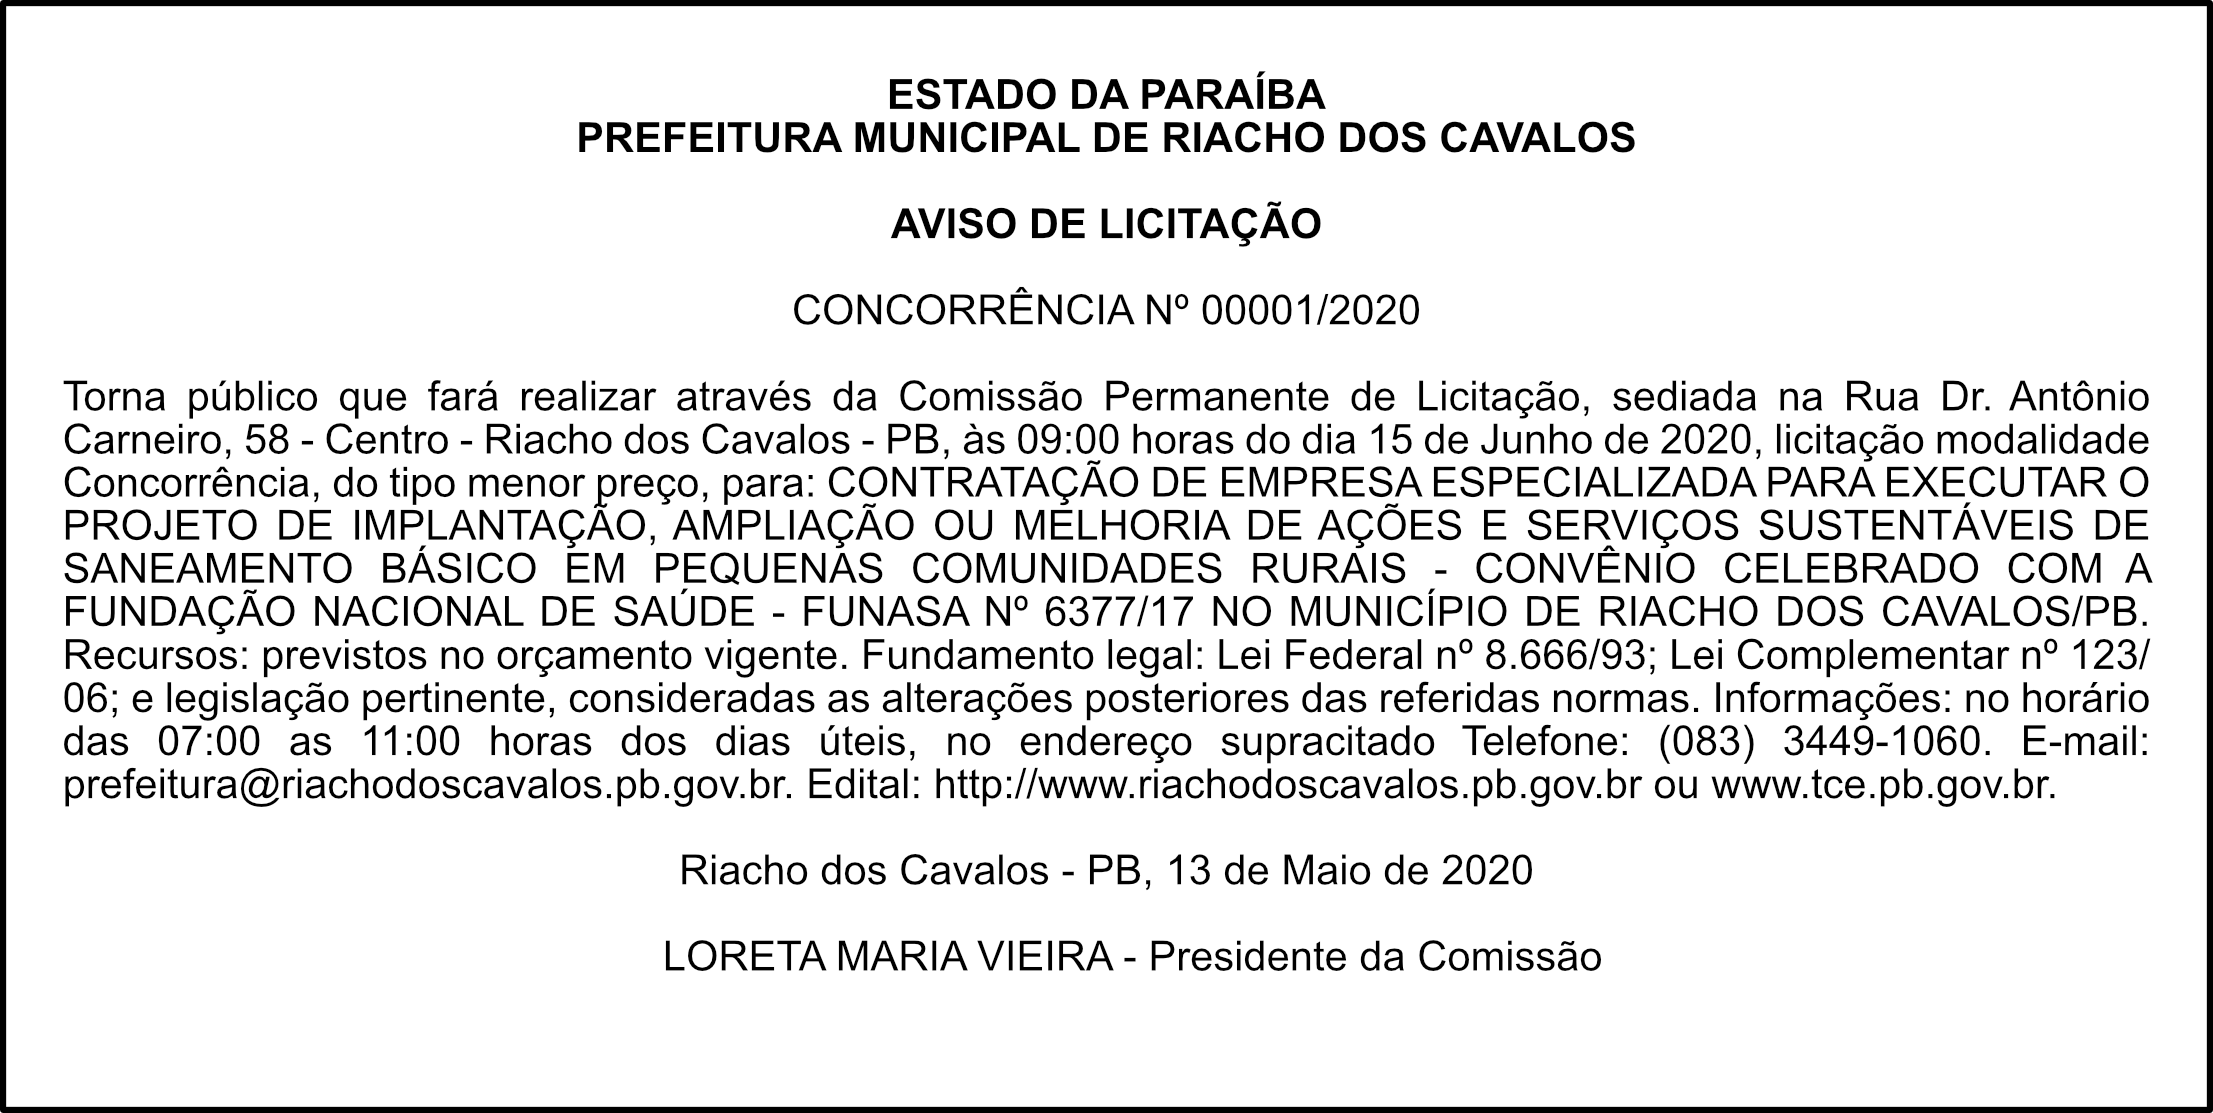 PREFEITURA MUNICIPAL DE RIACHO DOS CAVALOS – AVISO DE LICITAÇÃO – CONCORRÊNCIA Nº 00001/2020